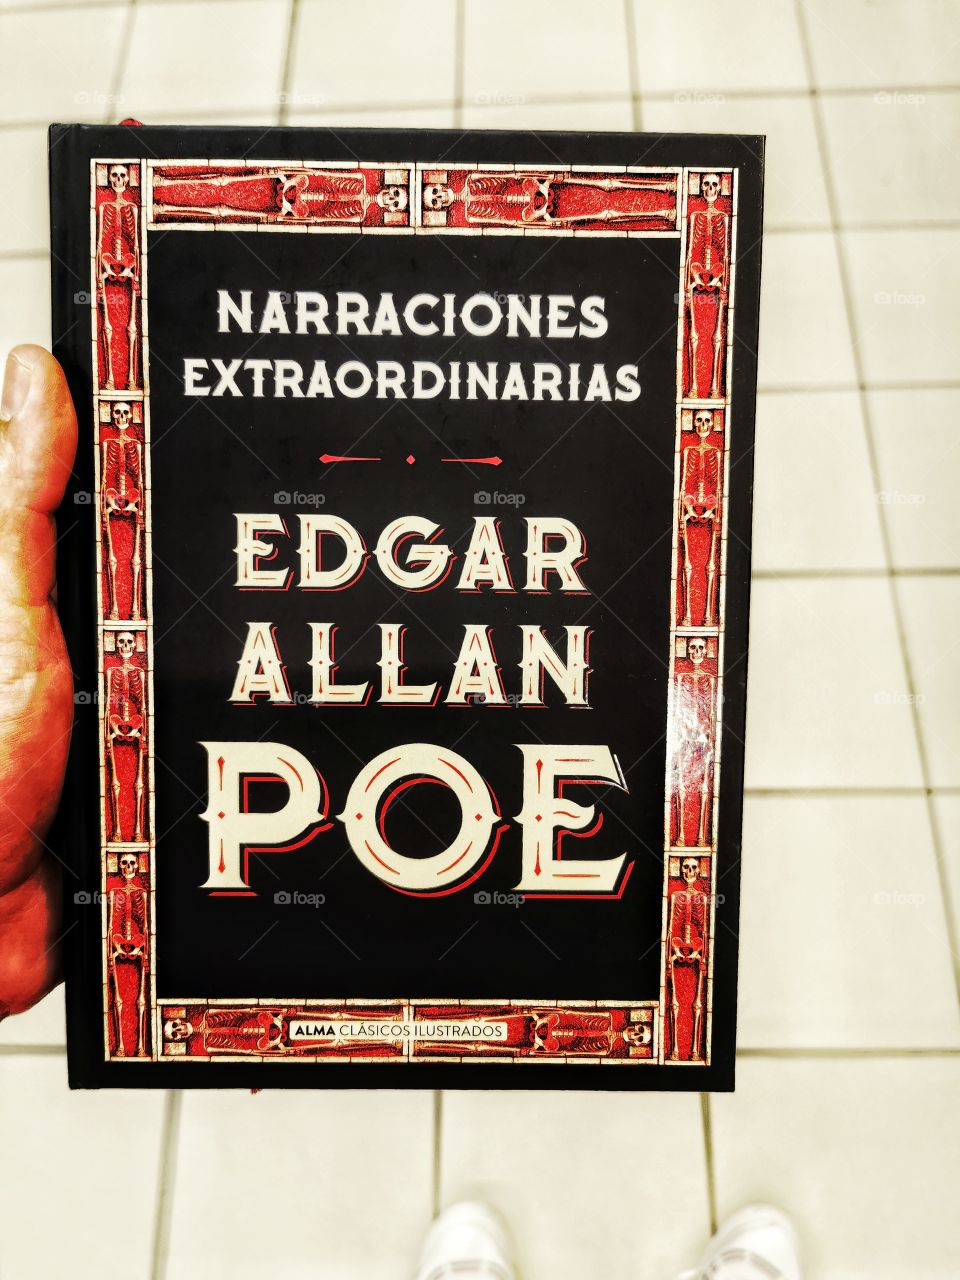 Este libro contiene narraciones increíbles sobre relatos escritos por el gran Edgar Allan Poe. Es una joya para cualquier amante de los libros.